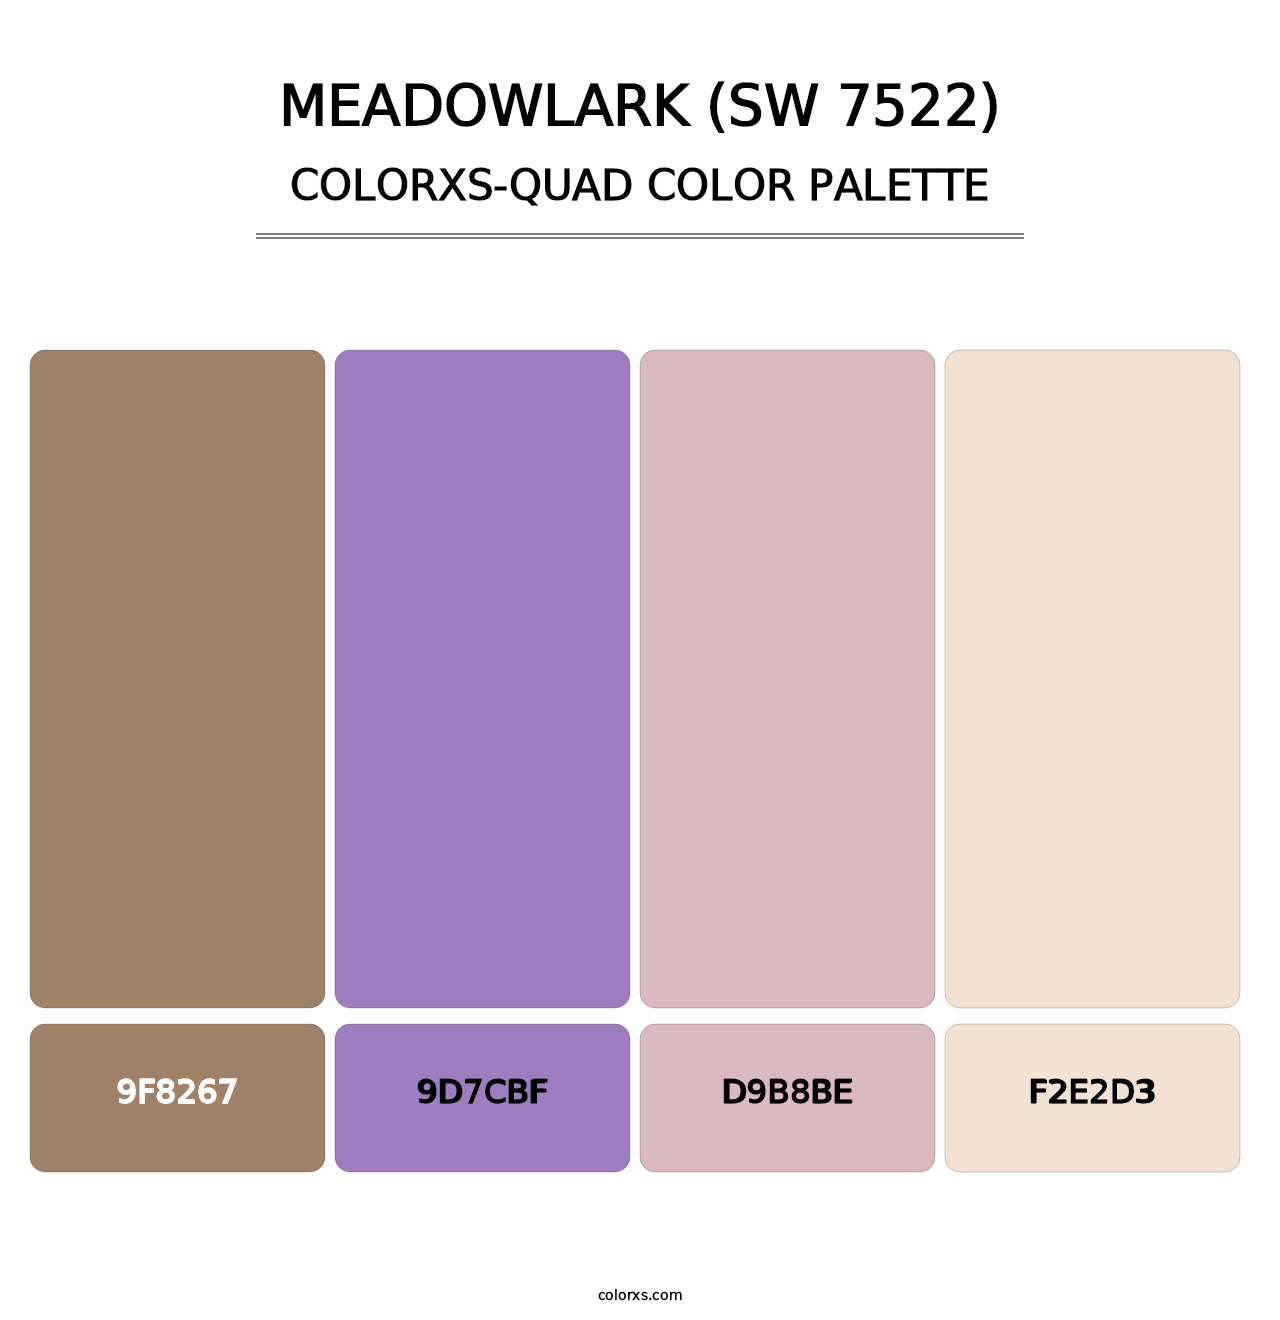 Meadowlark (SW 7522) - Colorxs Quad Palette